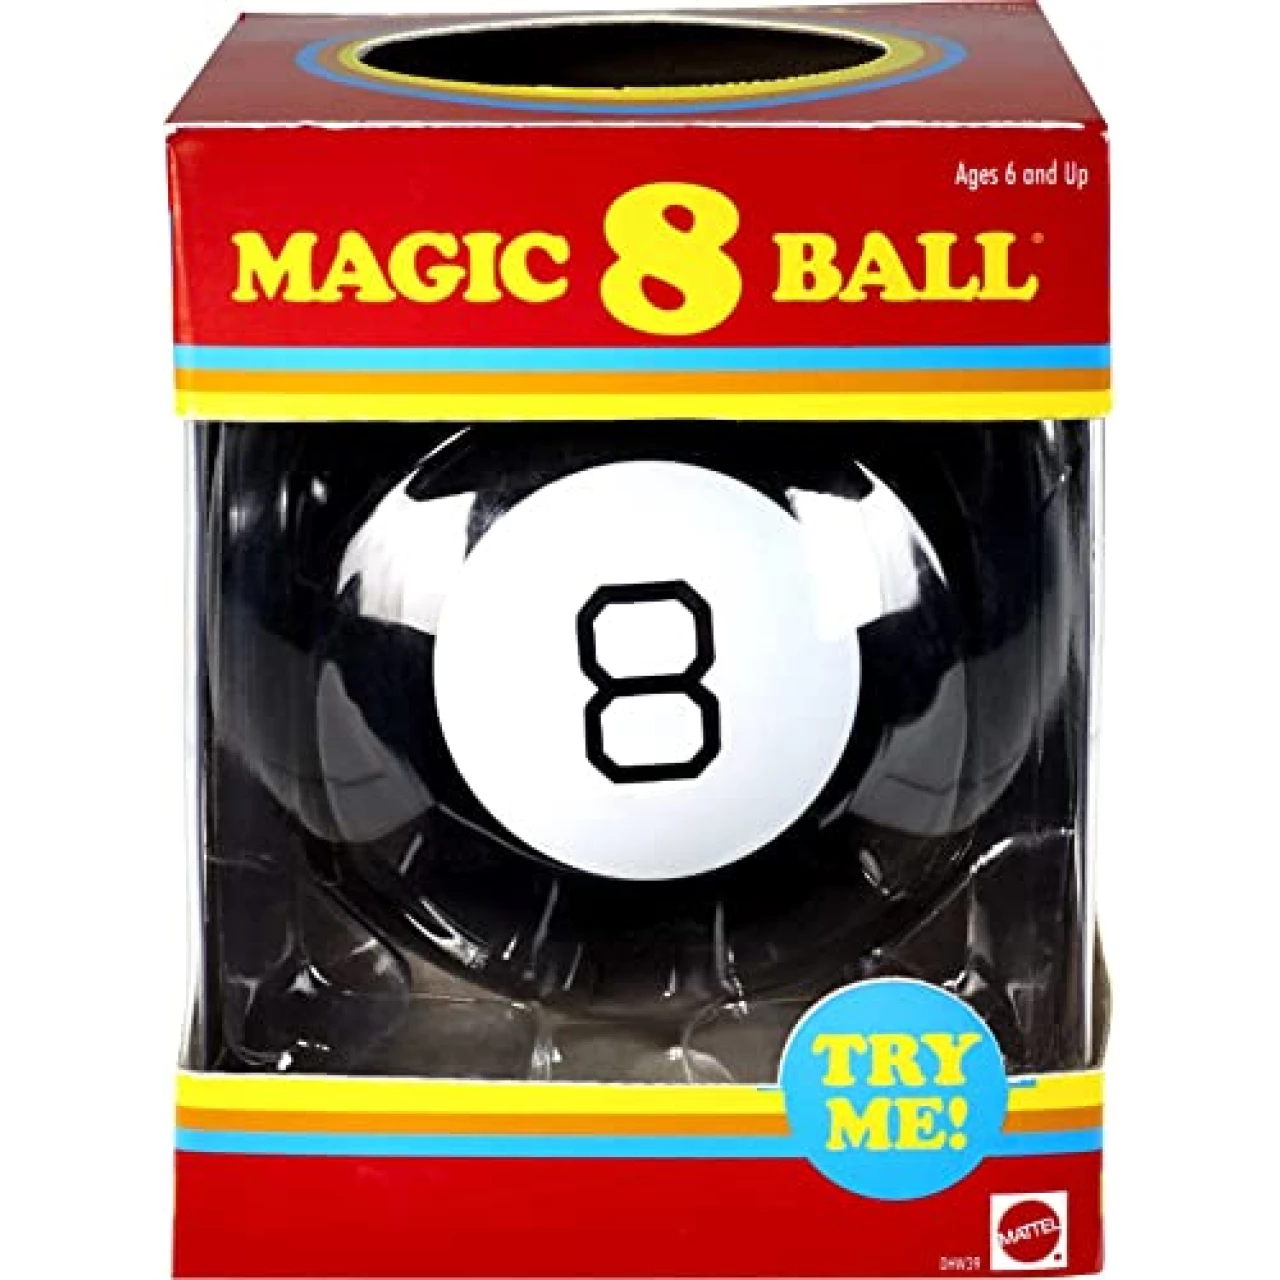 Magic 8 Ball Kids Toy, Retro Themed Novelty Fortune Teller